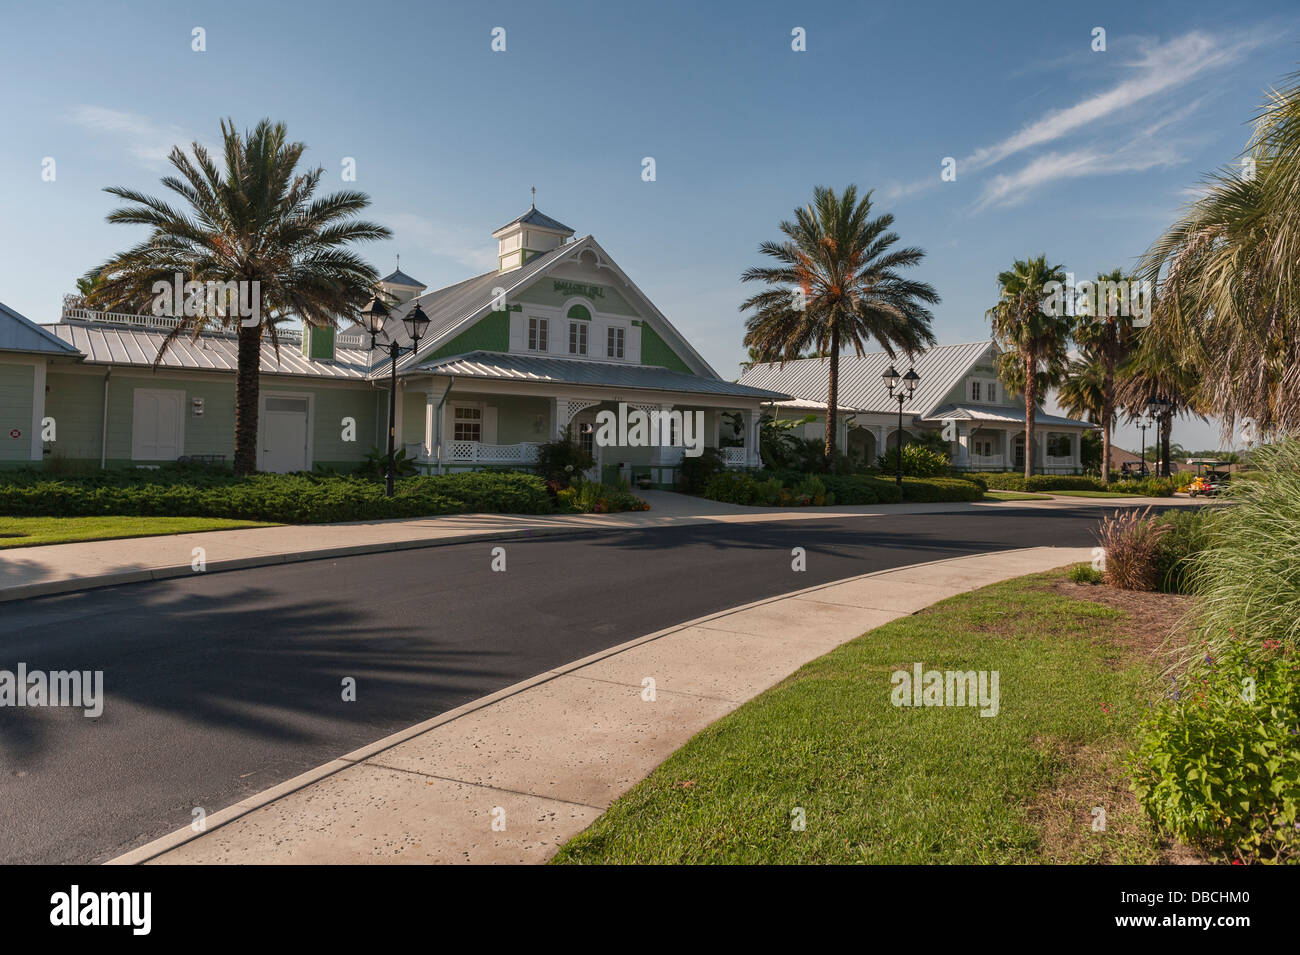 Le Mallory Hill Country Club pour le golf situé dans les villages, en Floride. Banque D'Images